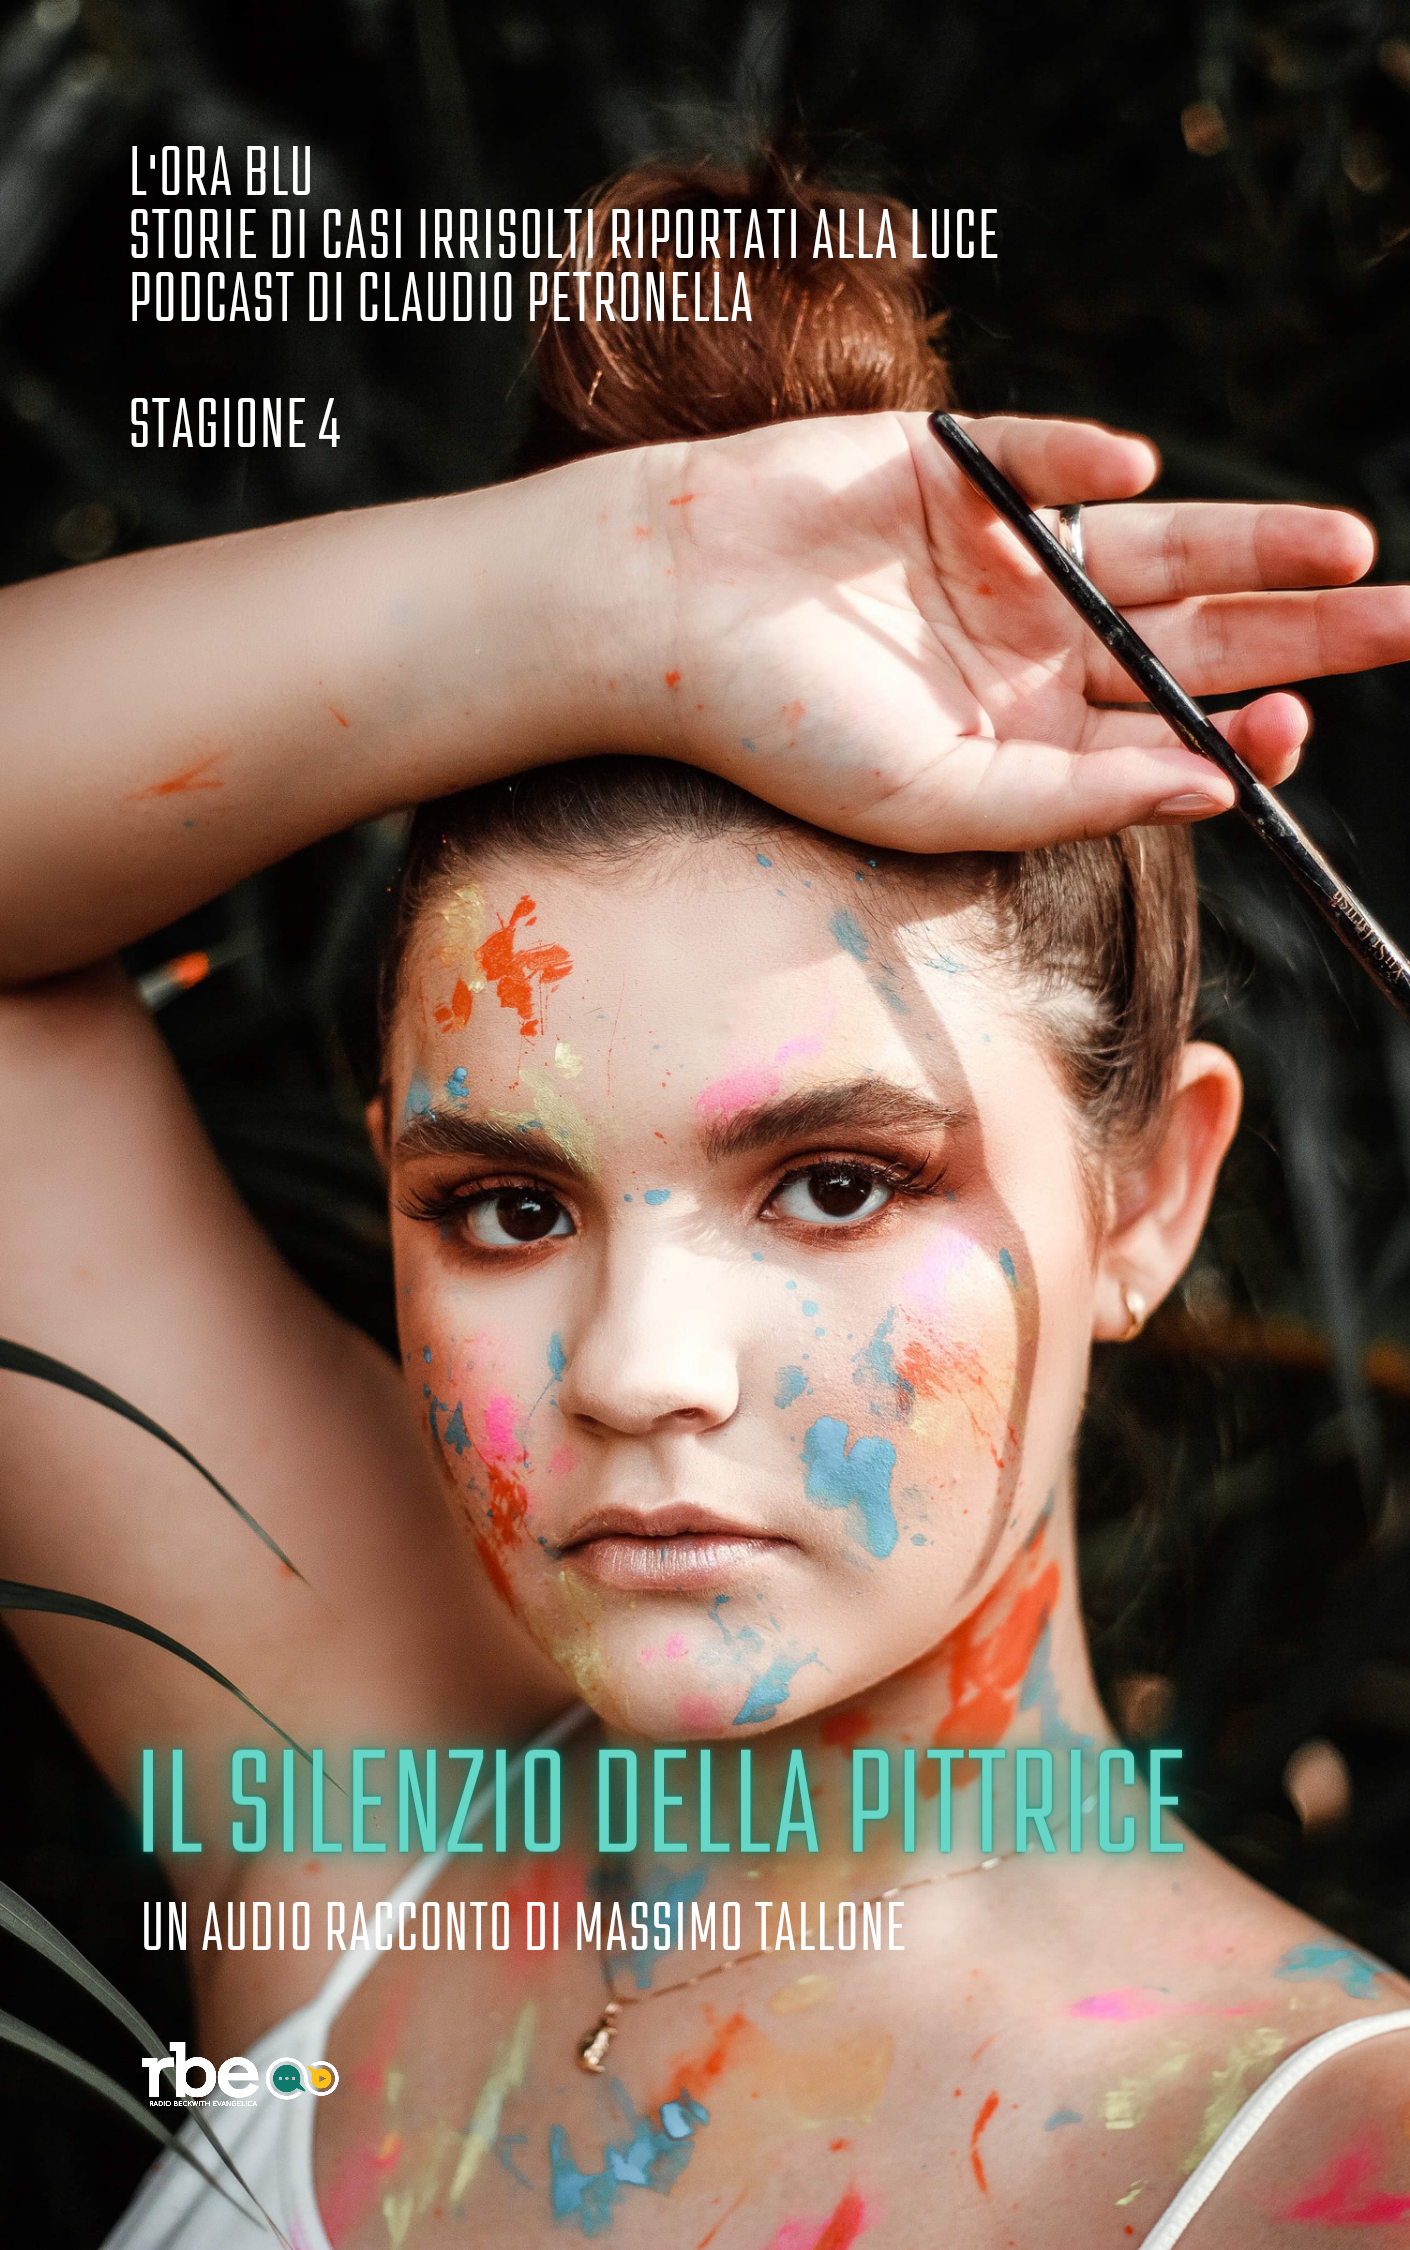 Il silenzio della pittrice, audio racconto di Massimo Tallone - L'Ora Blu, stagione 4